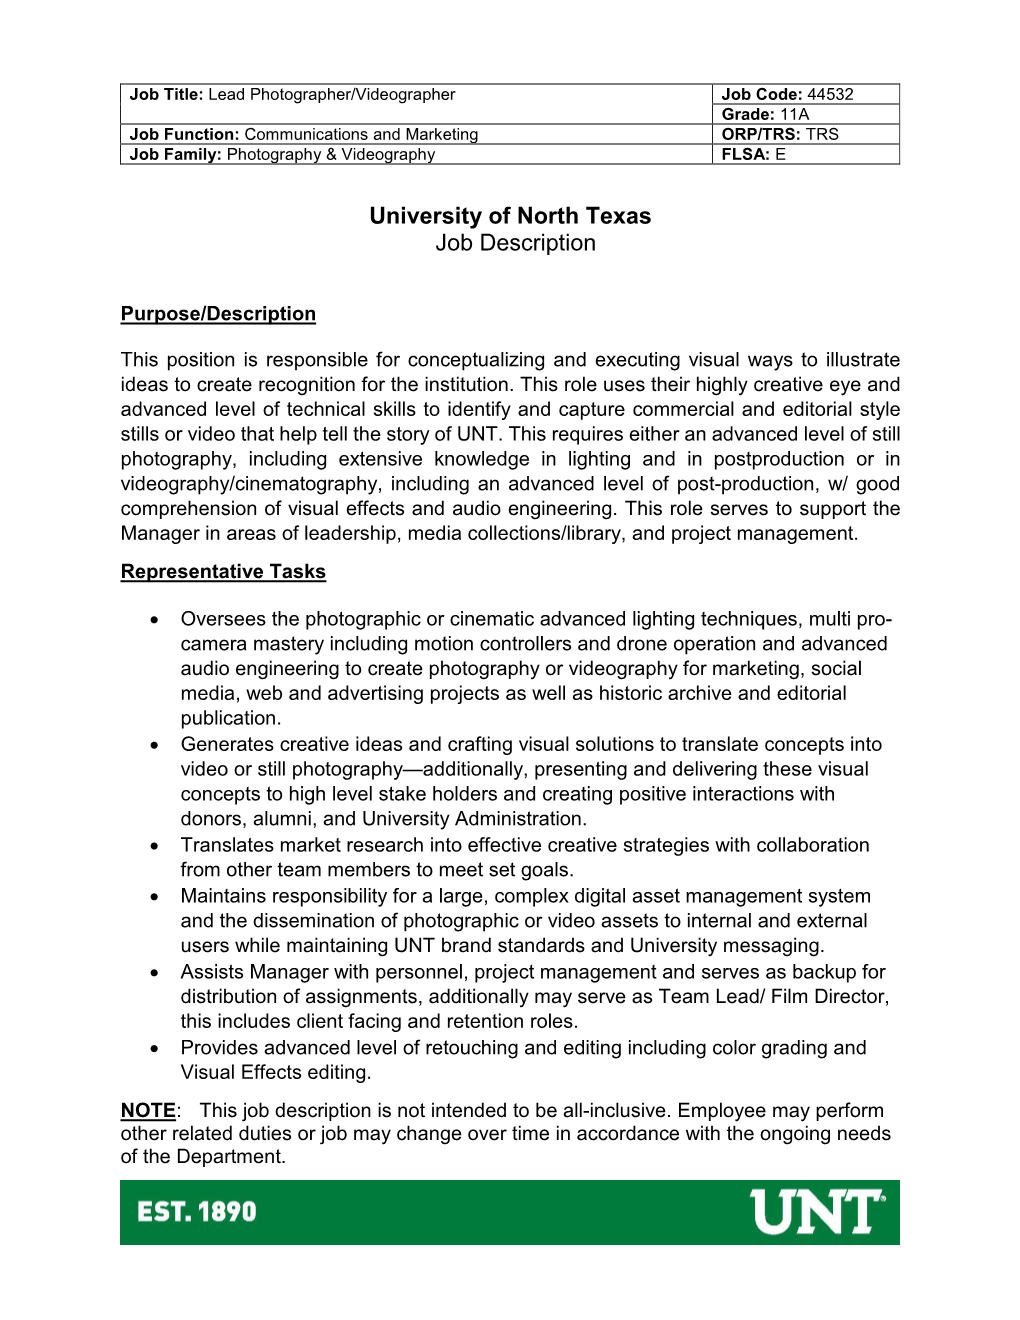 University of North Texas Job Description